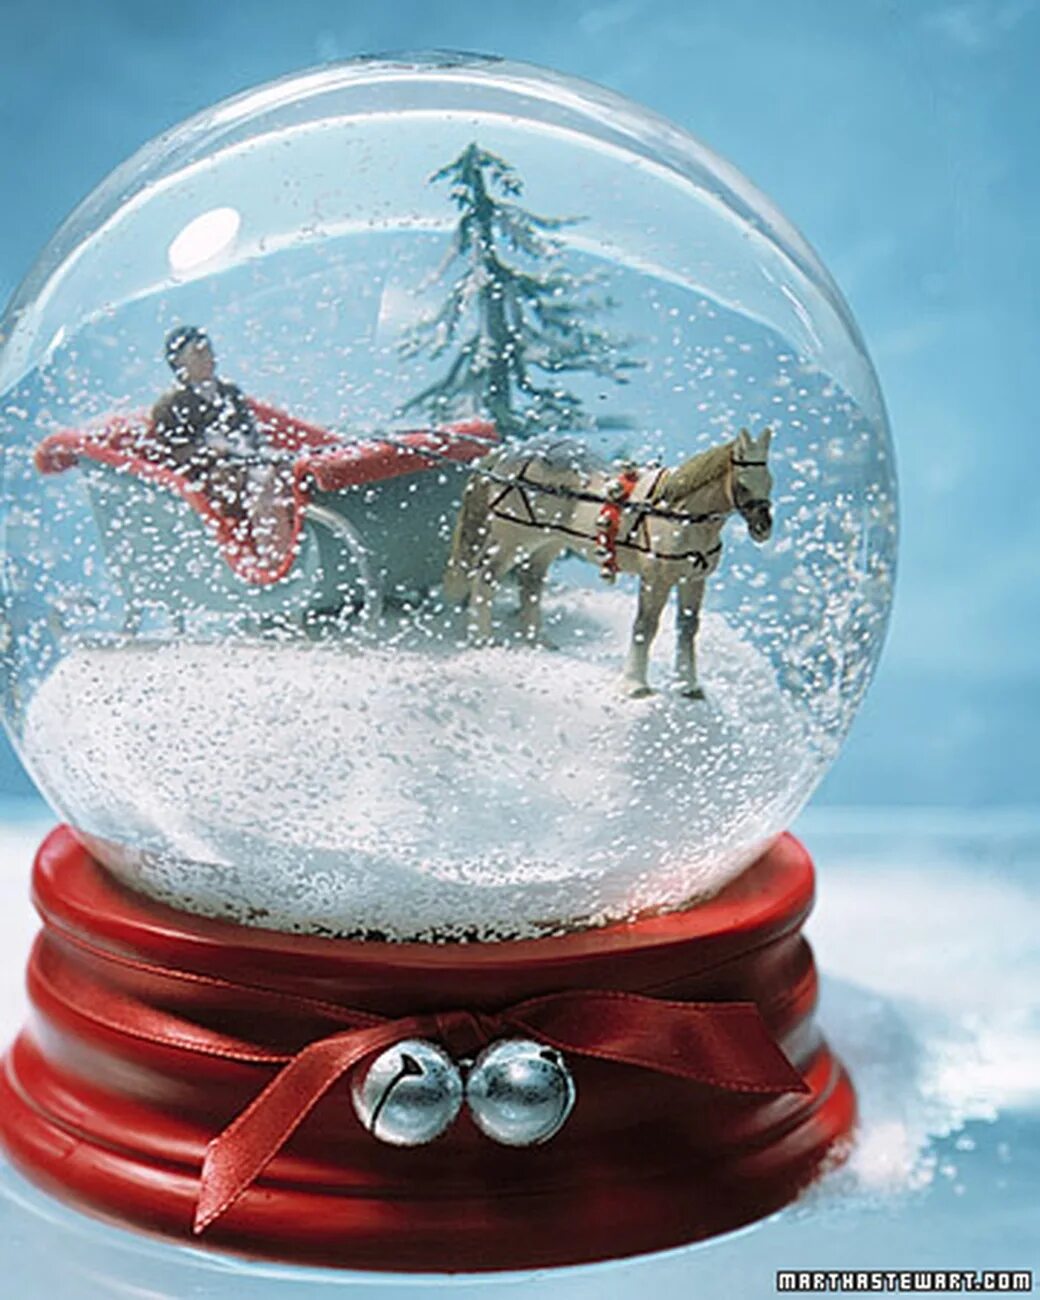 Шары внутри снег. Snowball снежный шар. Шар стеклянный. Новогодний стеклянный шар. Новогодний шар со снегом внутри.